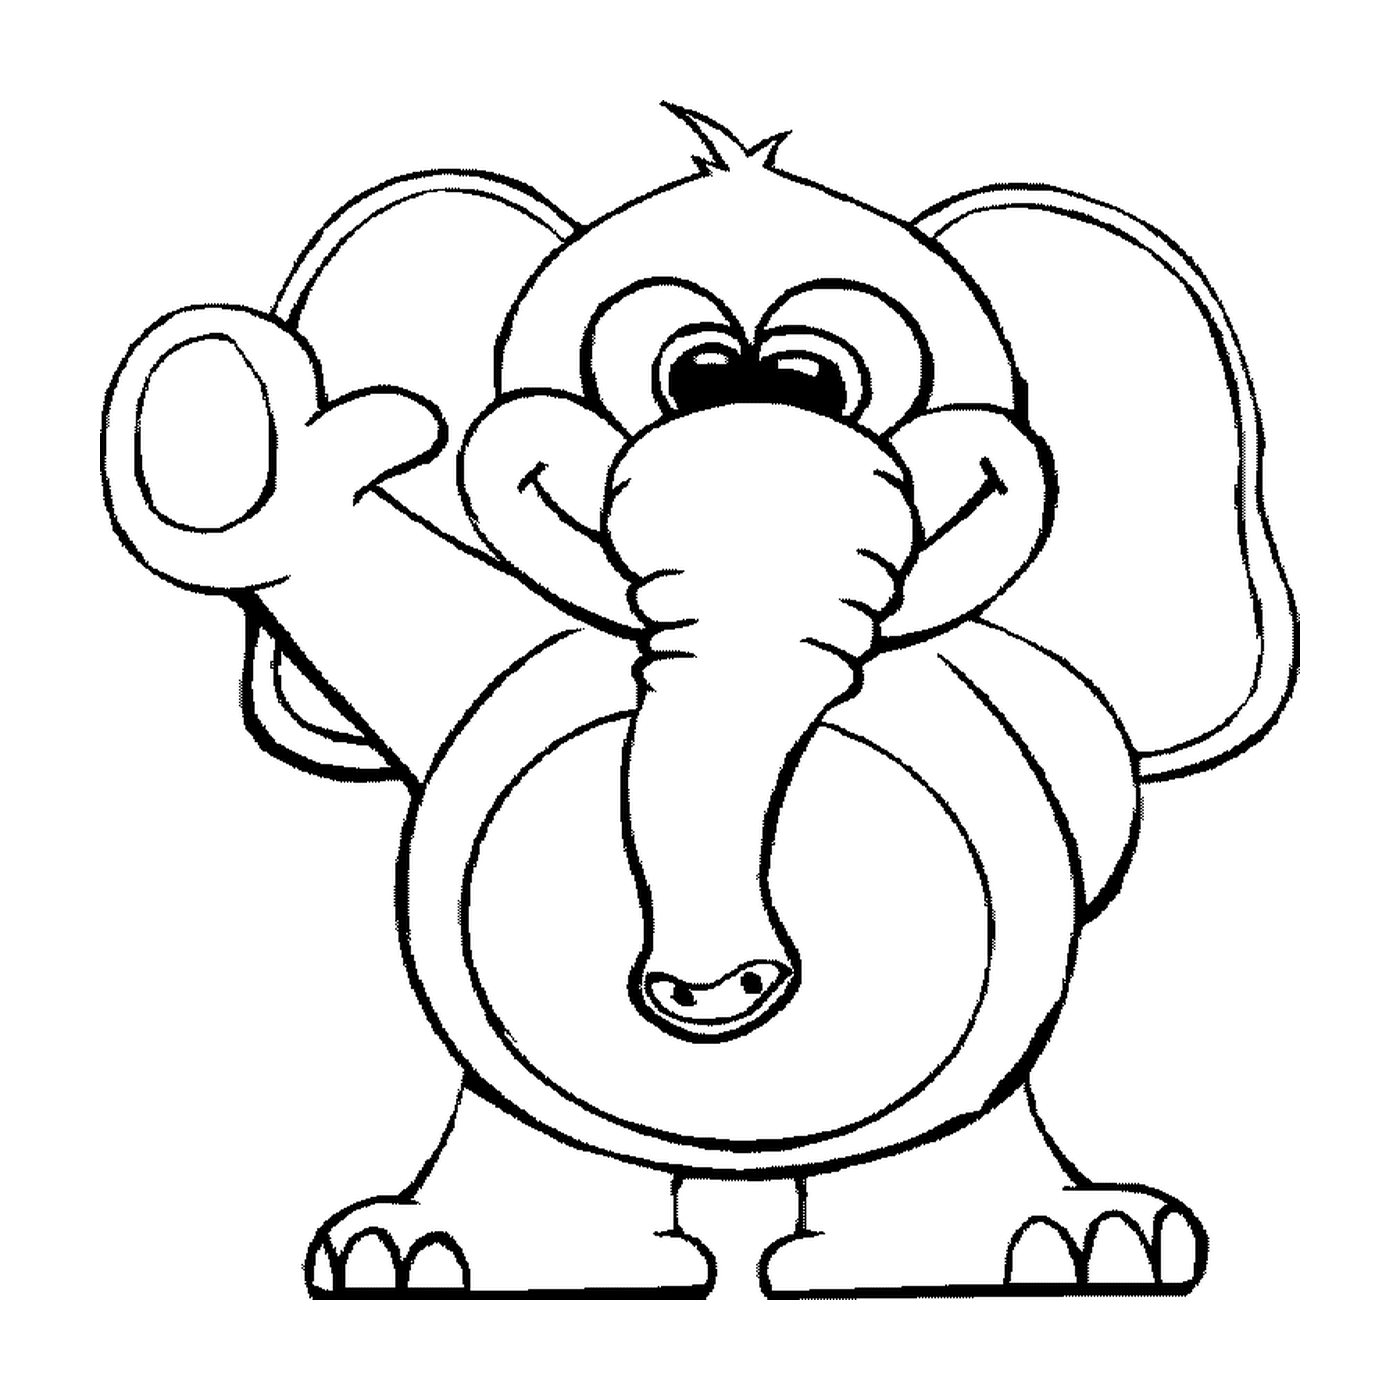  Um elefante em um estilo de desenho animado 